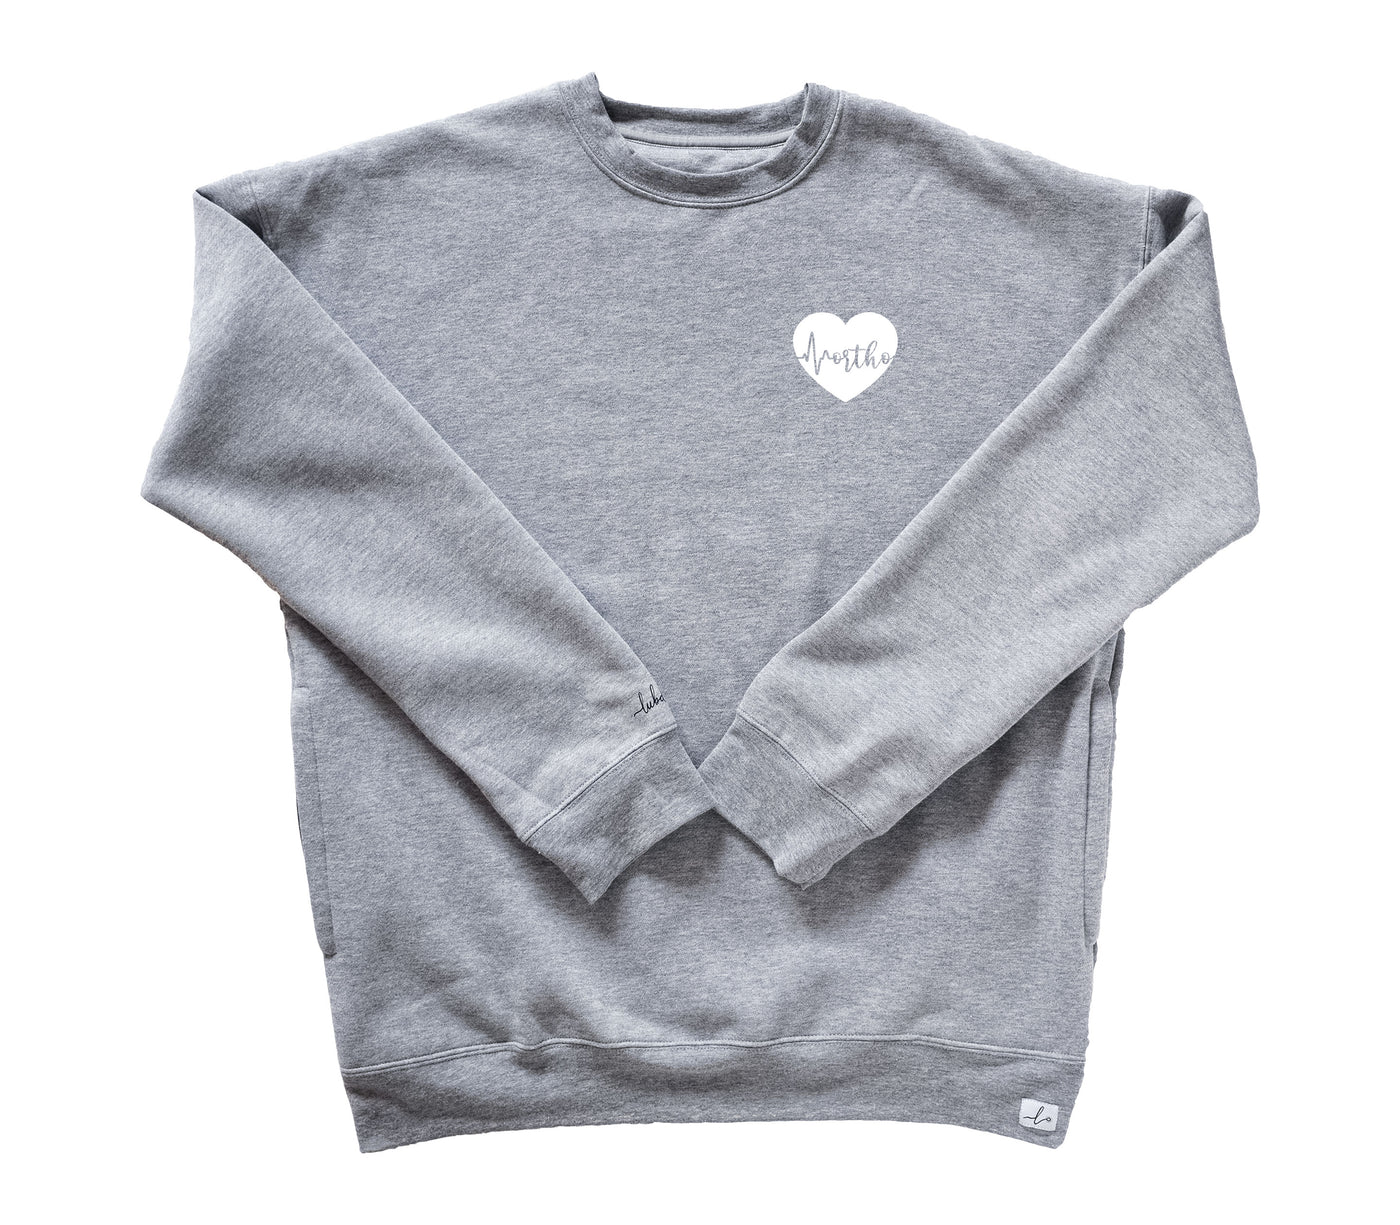 Ortho ECG Heart - Pocketed Crew Sweatshirt